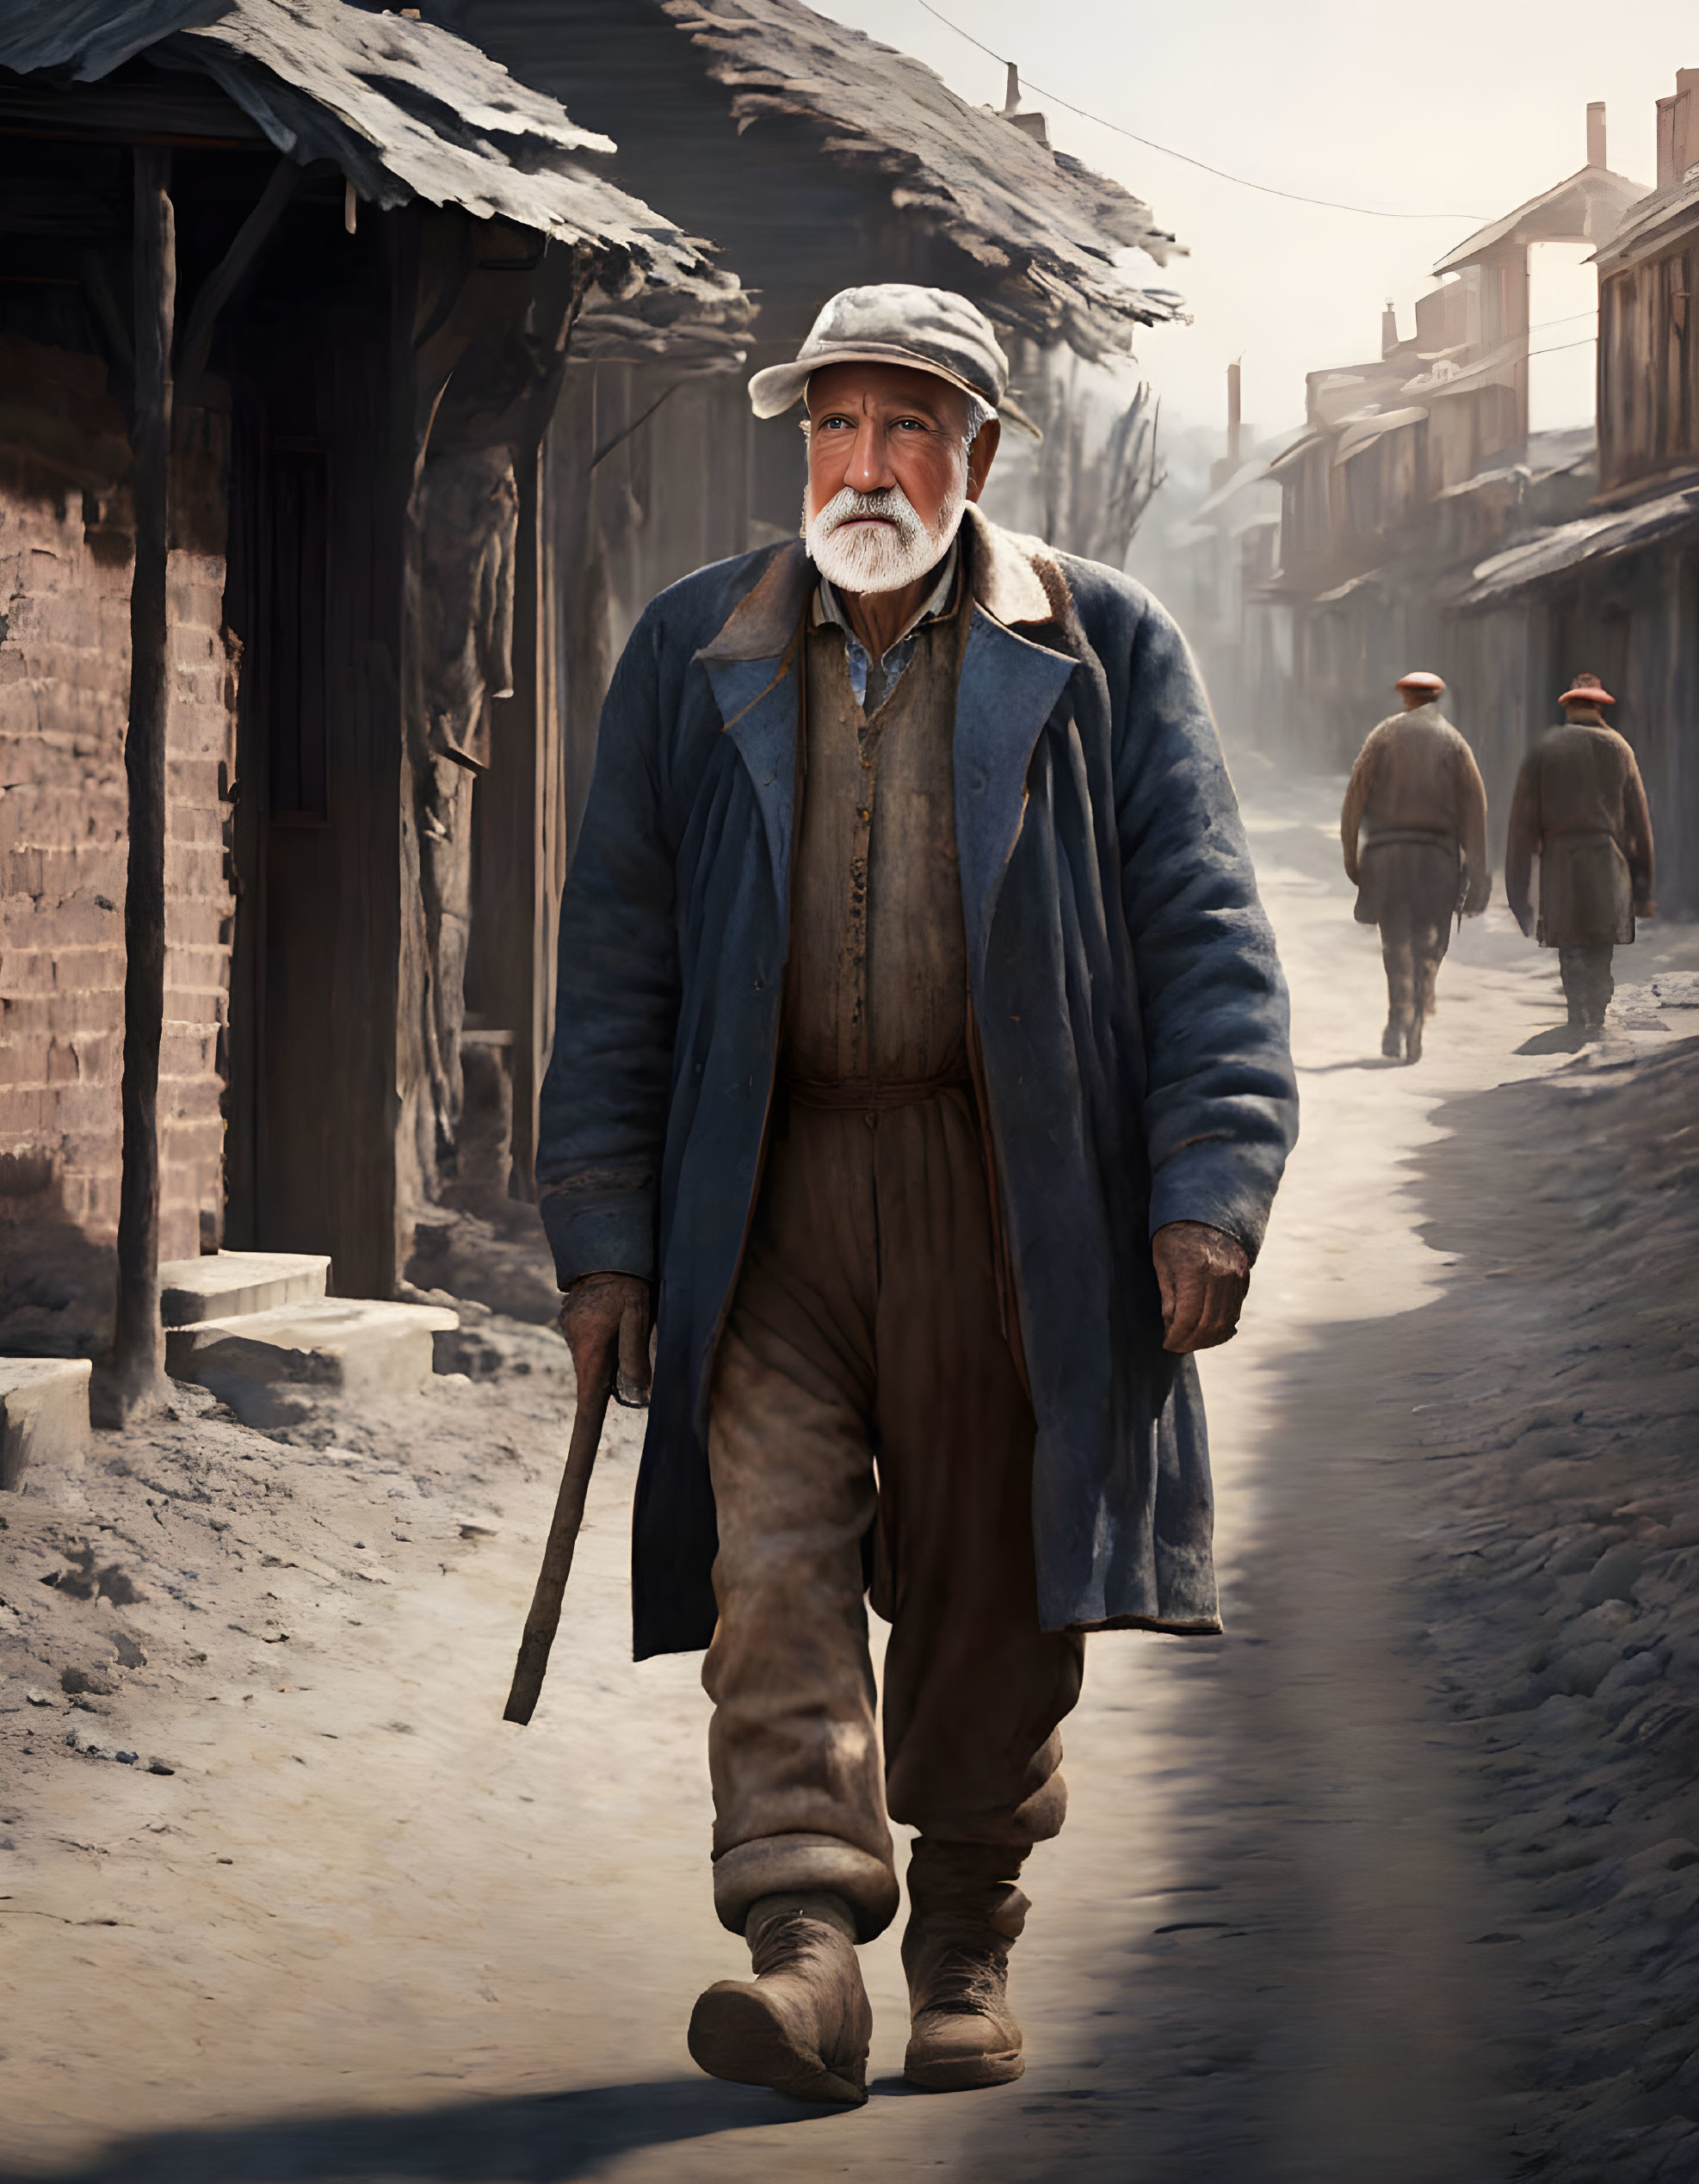 Elderly gentleman in flat cap and overcoat on dusty street